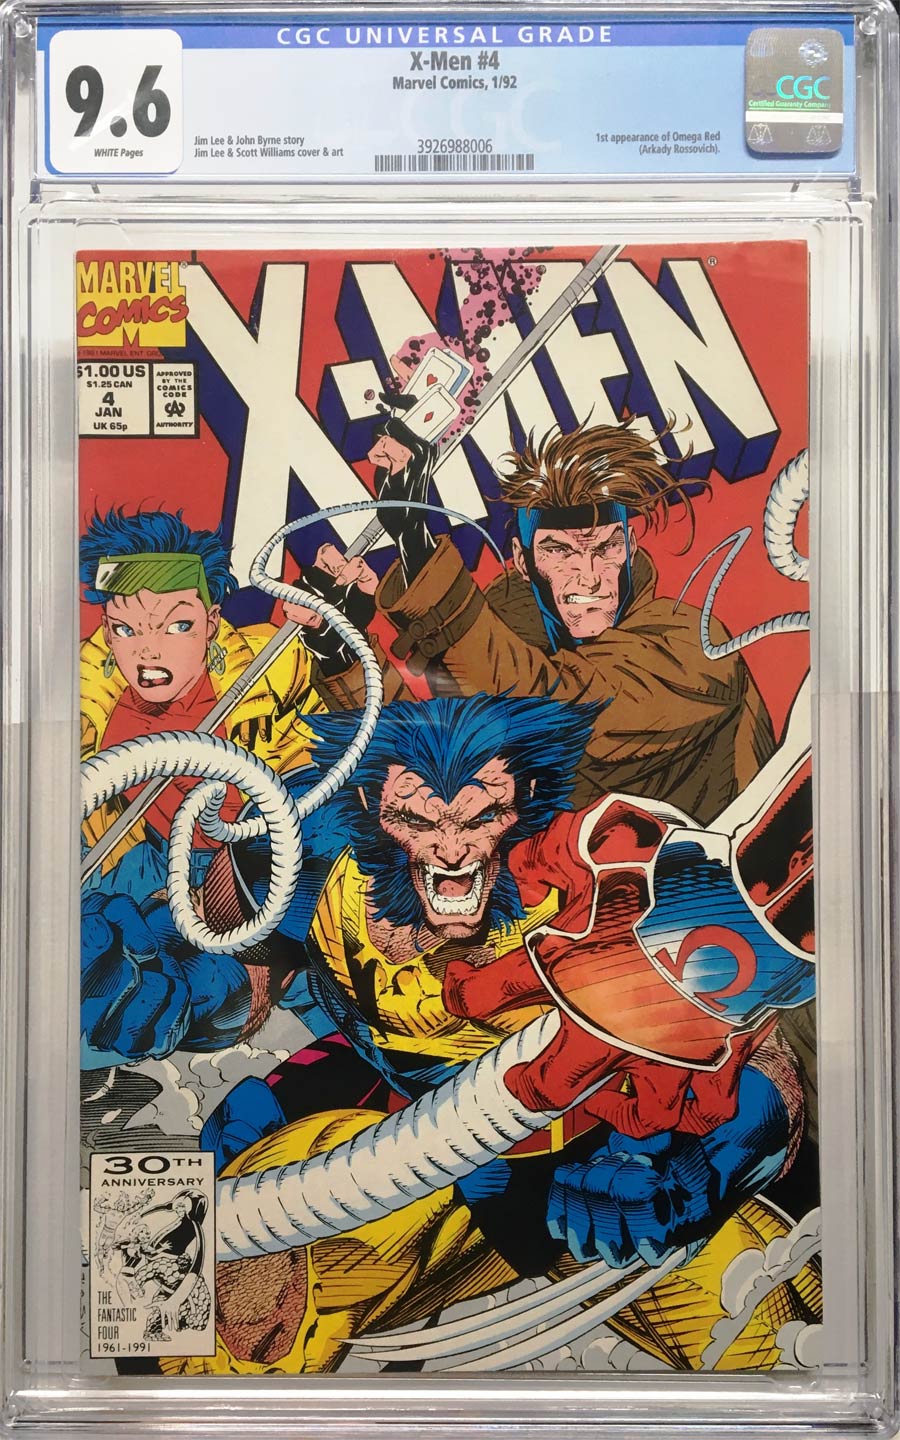 X-Men Vol 2 #4 Cover C CGC 9.6